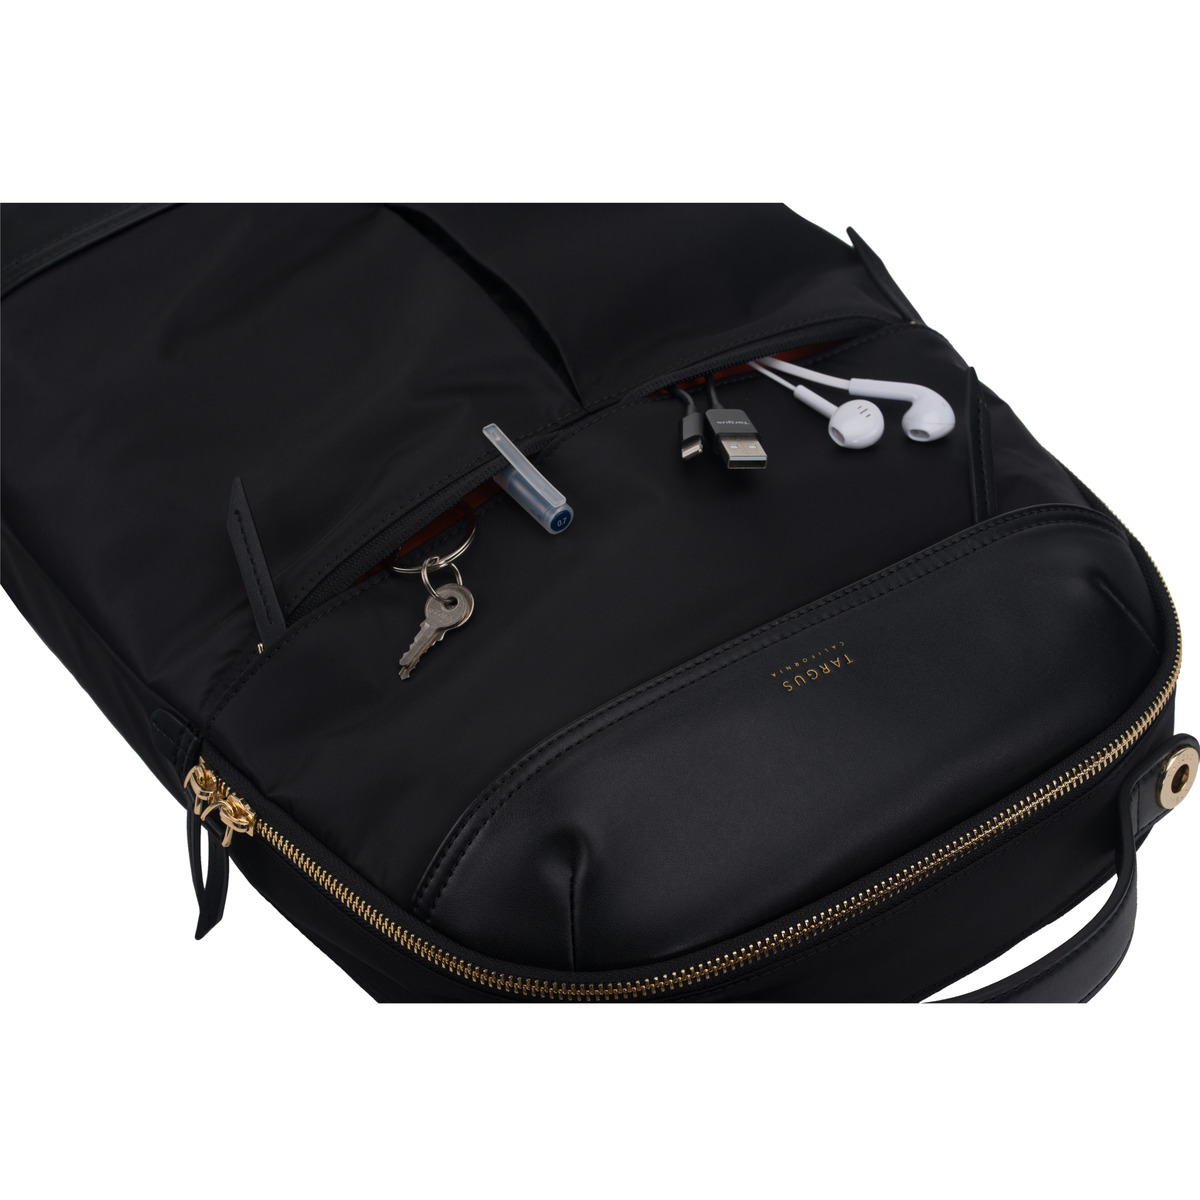 Targus 15" Newport Laptop Backpack, Black - TSB945BT - image 14 of 17